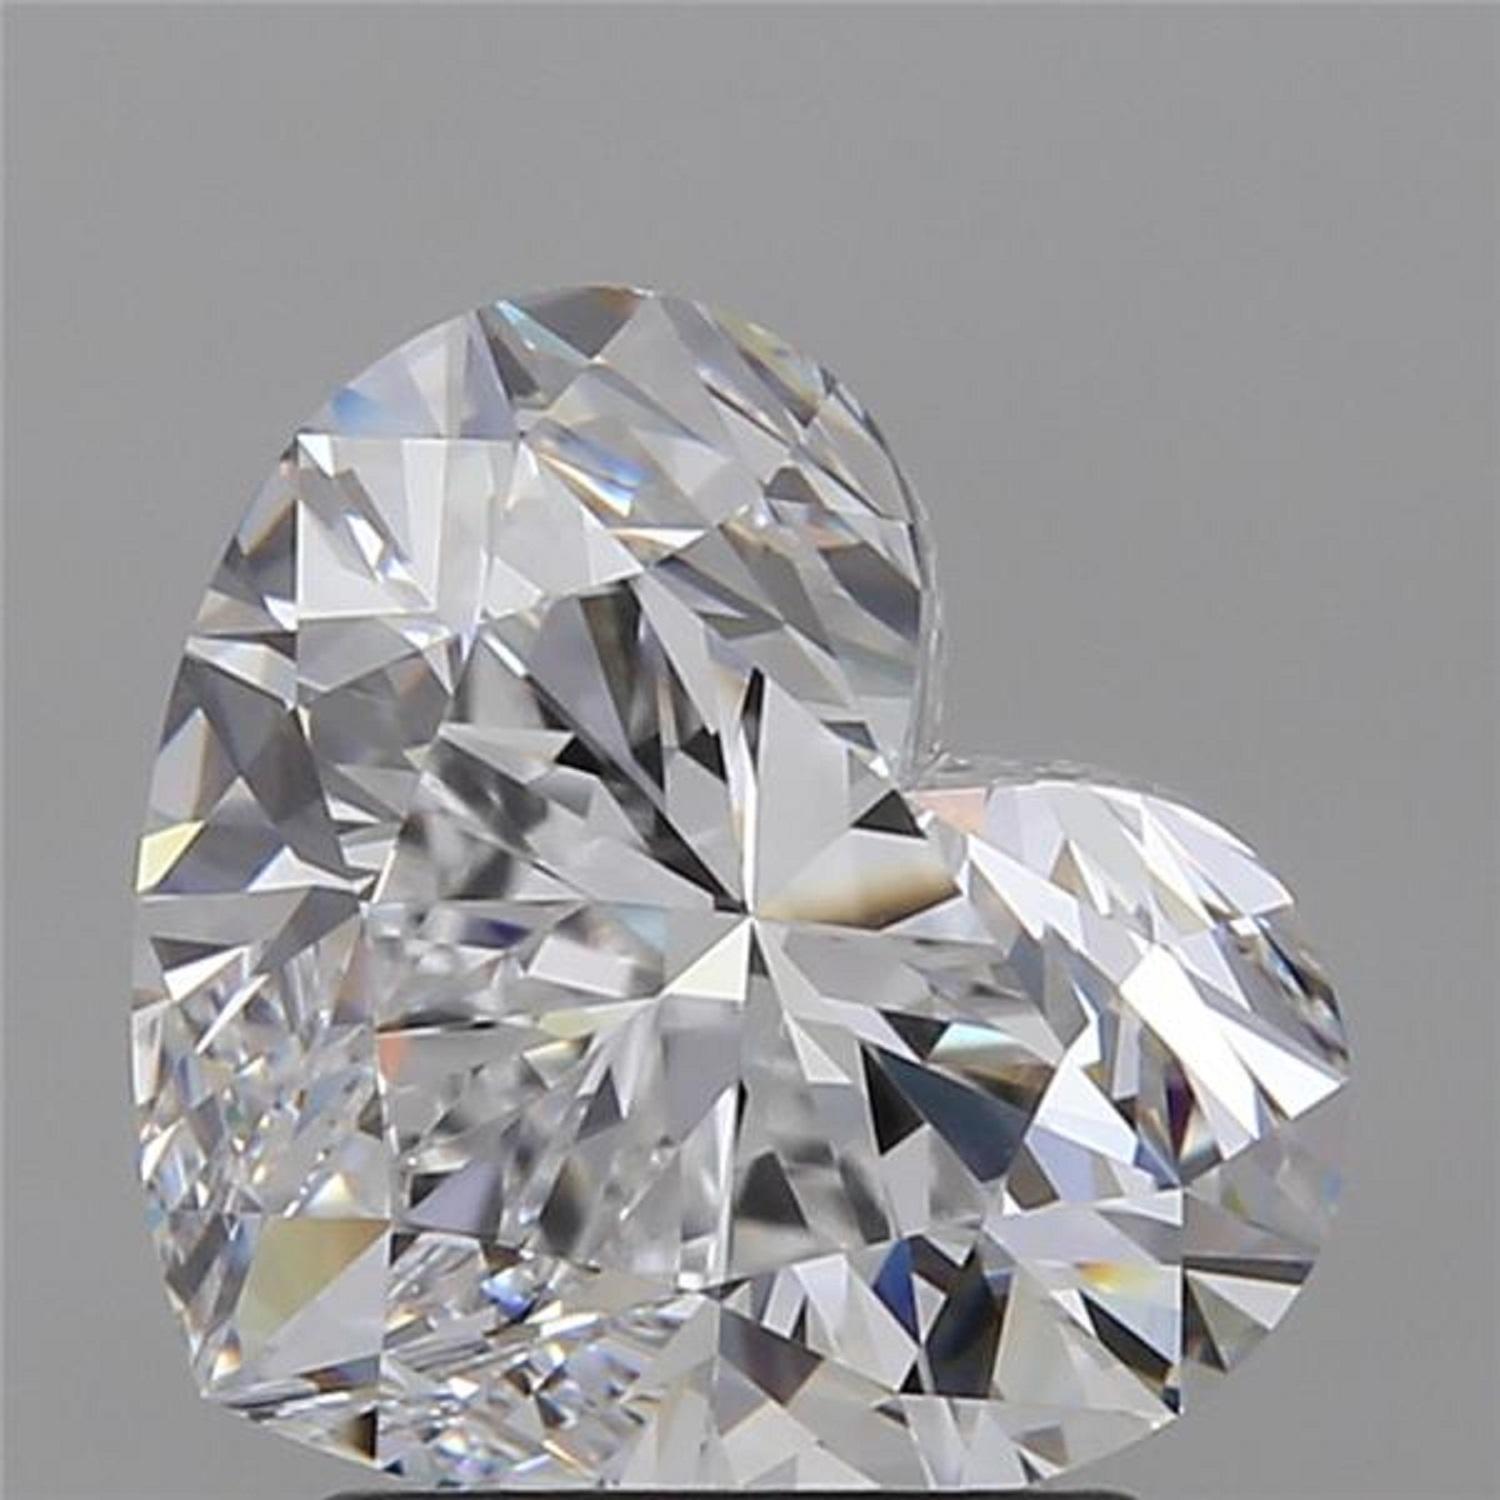 Ein exquisiter zertifizierter 8-Karat-Diamant in Herzform, völlig augenrein und voller Leben! 

Der Diamant wurde von GIA zertifiziert

gefasst in massivem Platin. Der Ring ist in der Größe veränderbar oder sogar anpassbar 
